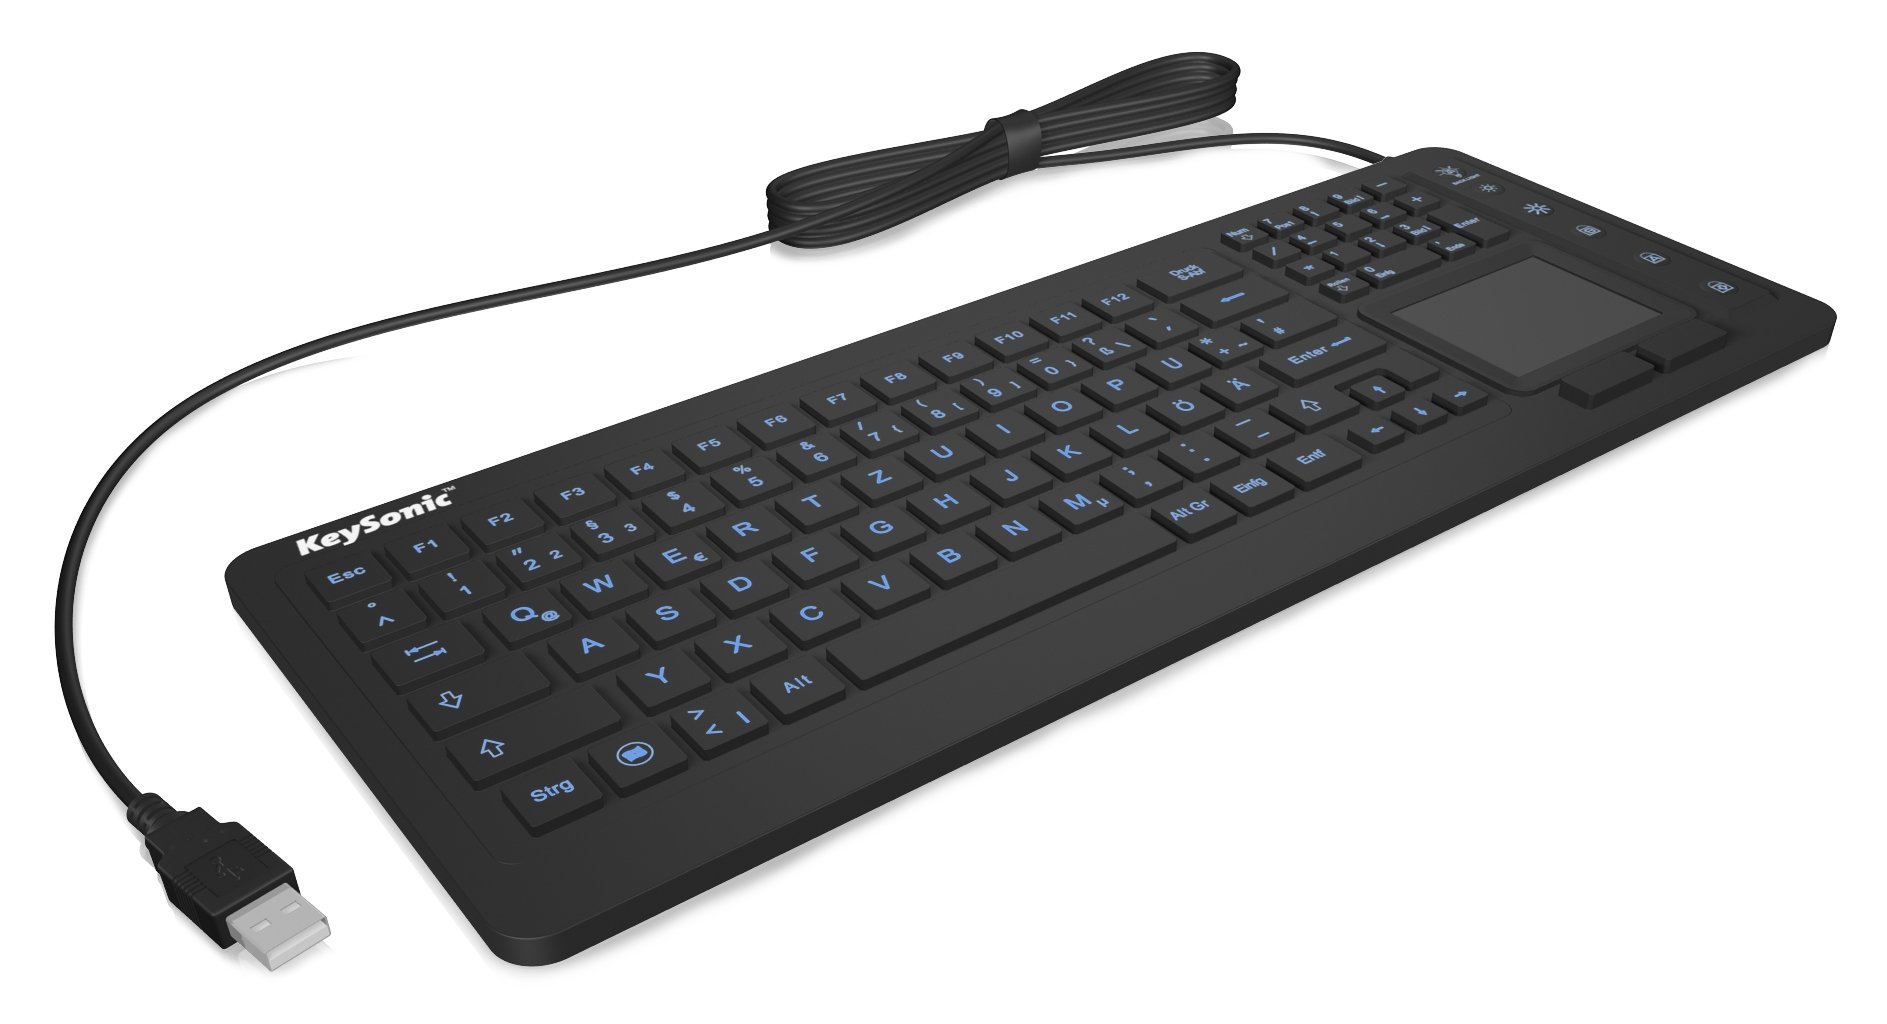 KeySonic Industrie Tastatur, USB-kabelgebunden mit Touchpad, wasserdicht, staubdicht (IP68), Silikon, KSK-6231 INEL (CH)